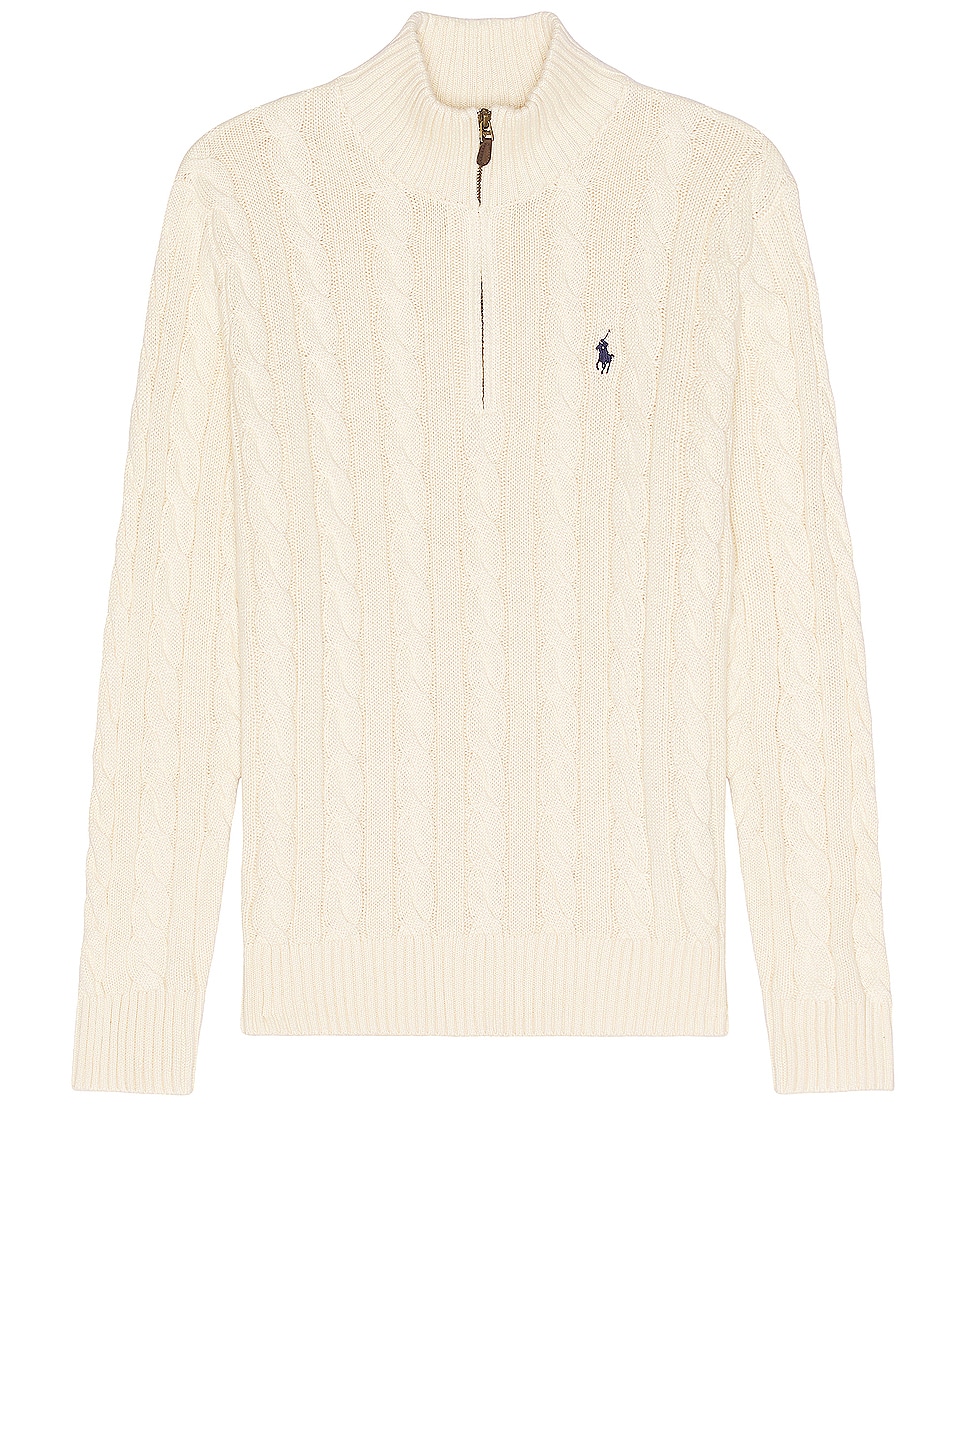 Image 1 of Polo Ralph Lauren Roving Zip Sweater in Andover Cream